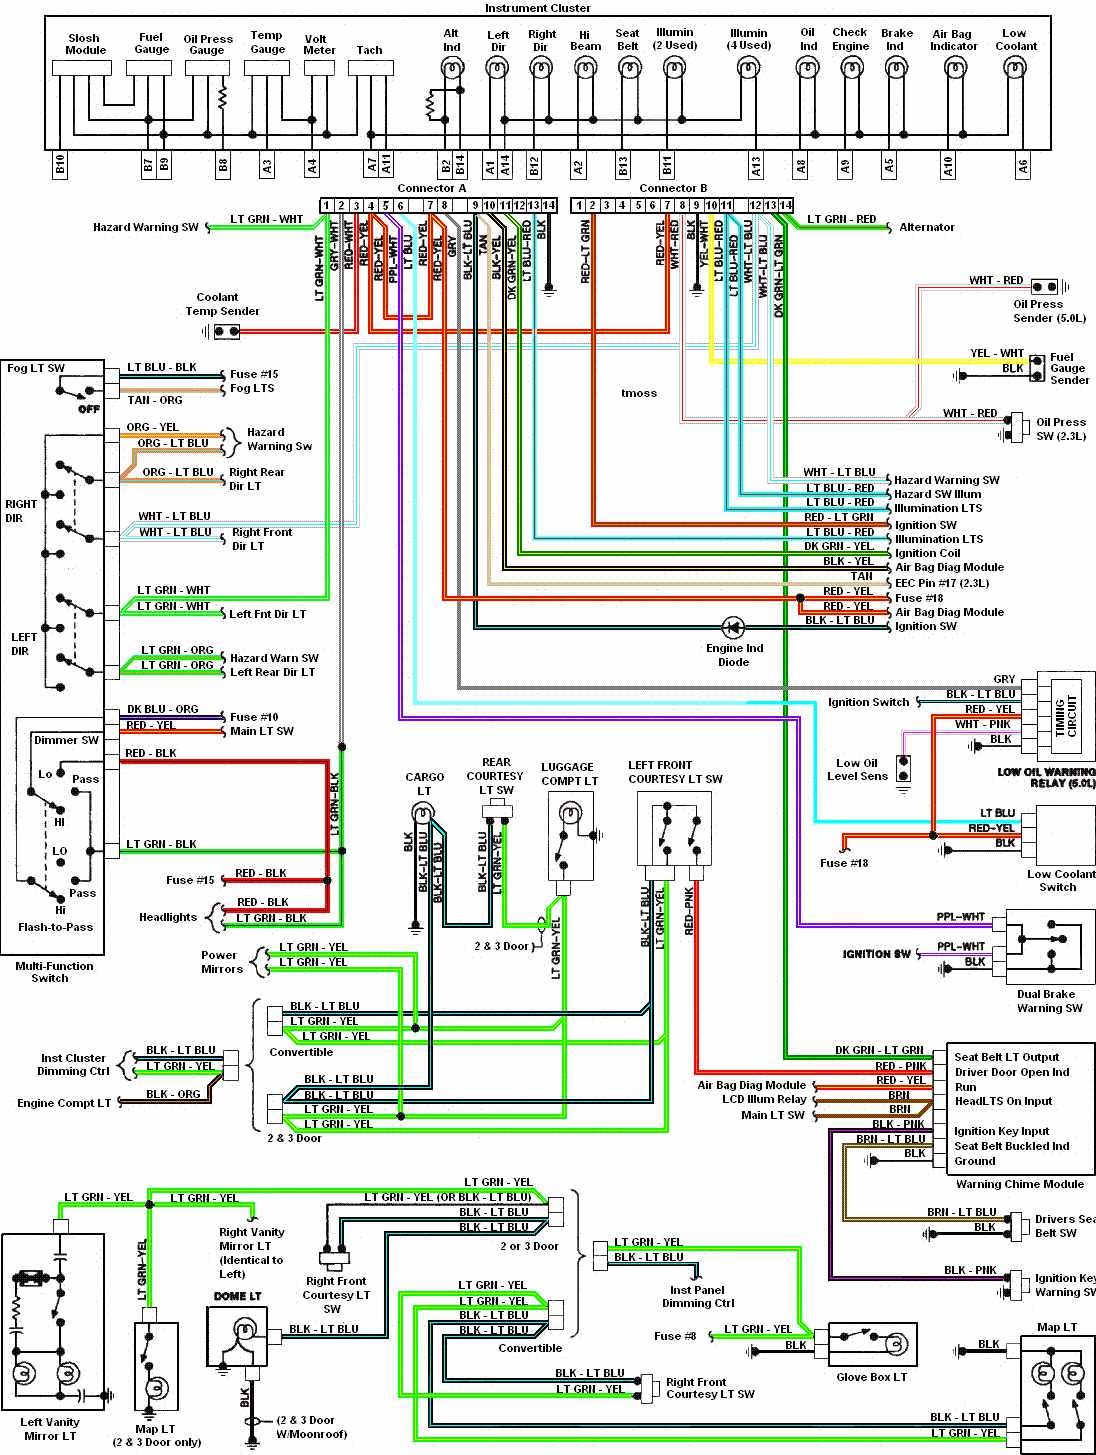 instrument cluster wiring diagram wiring diagrams schematics Camaro Fuel Pump Schematic 92 Camaro Fuel Pump Wiring